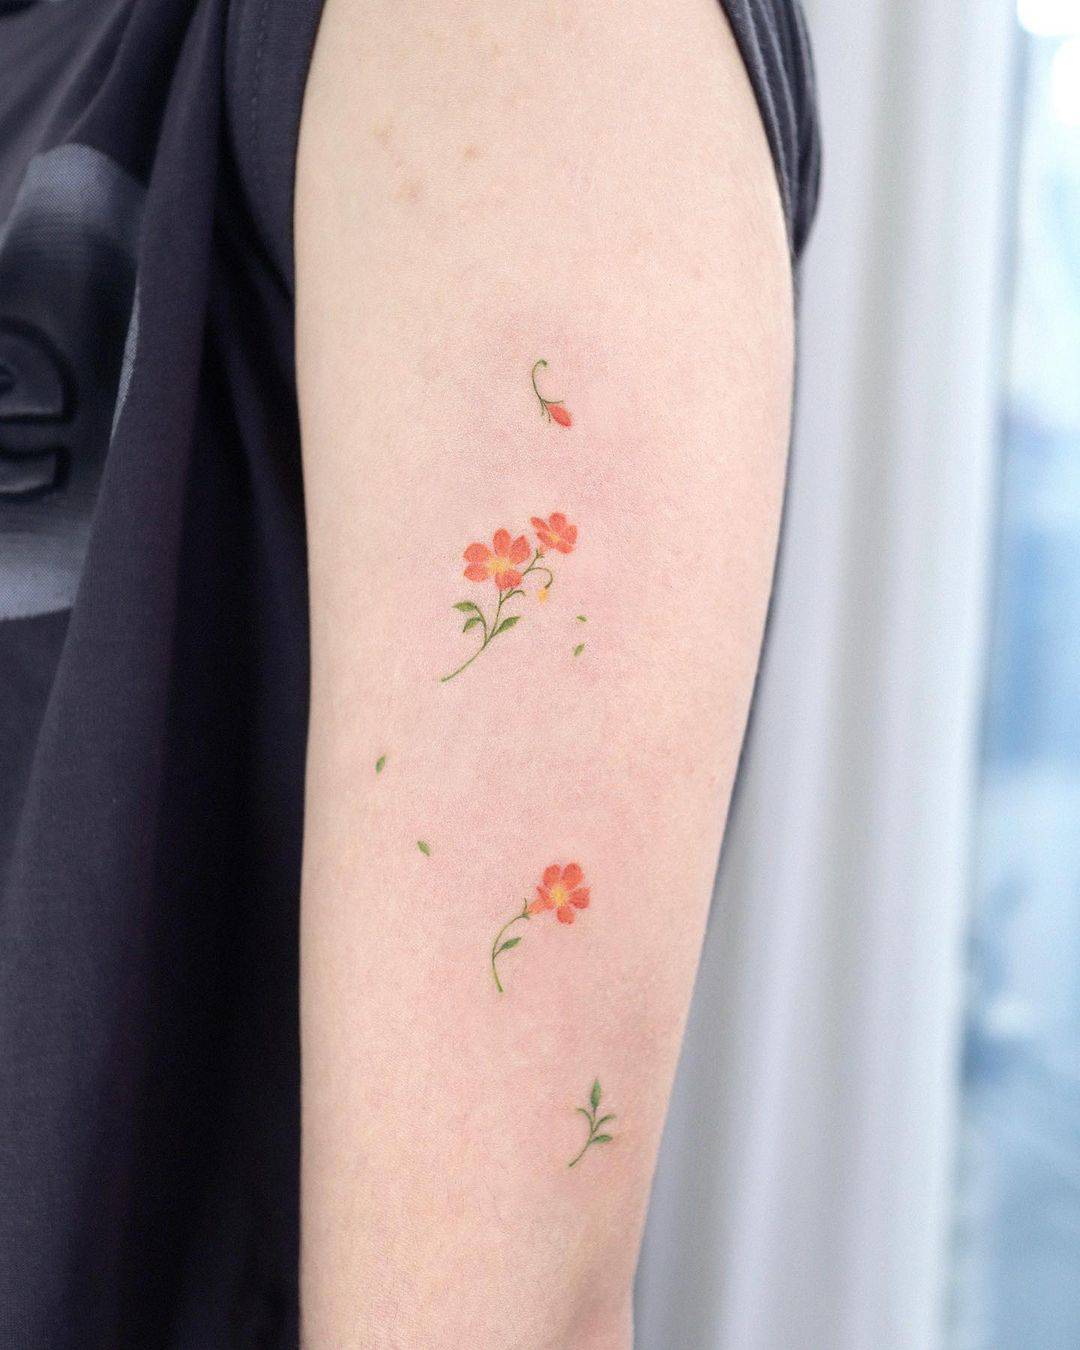 Cute flower tattoo by aol.tattoo